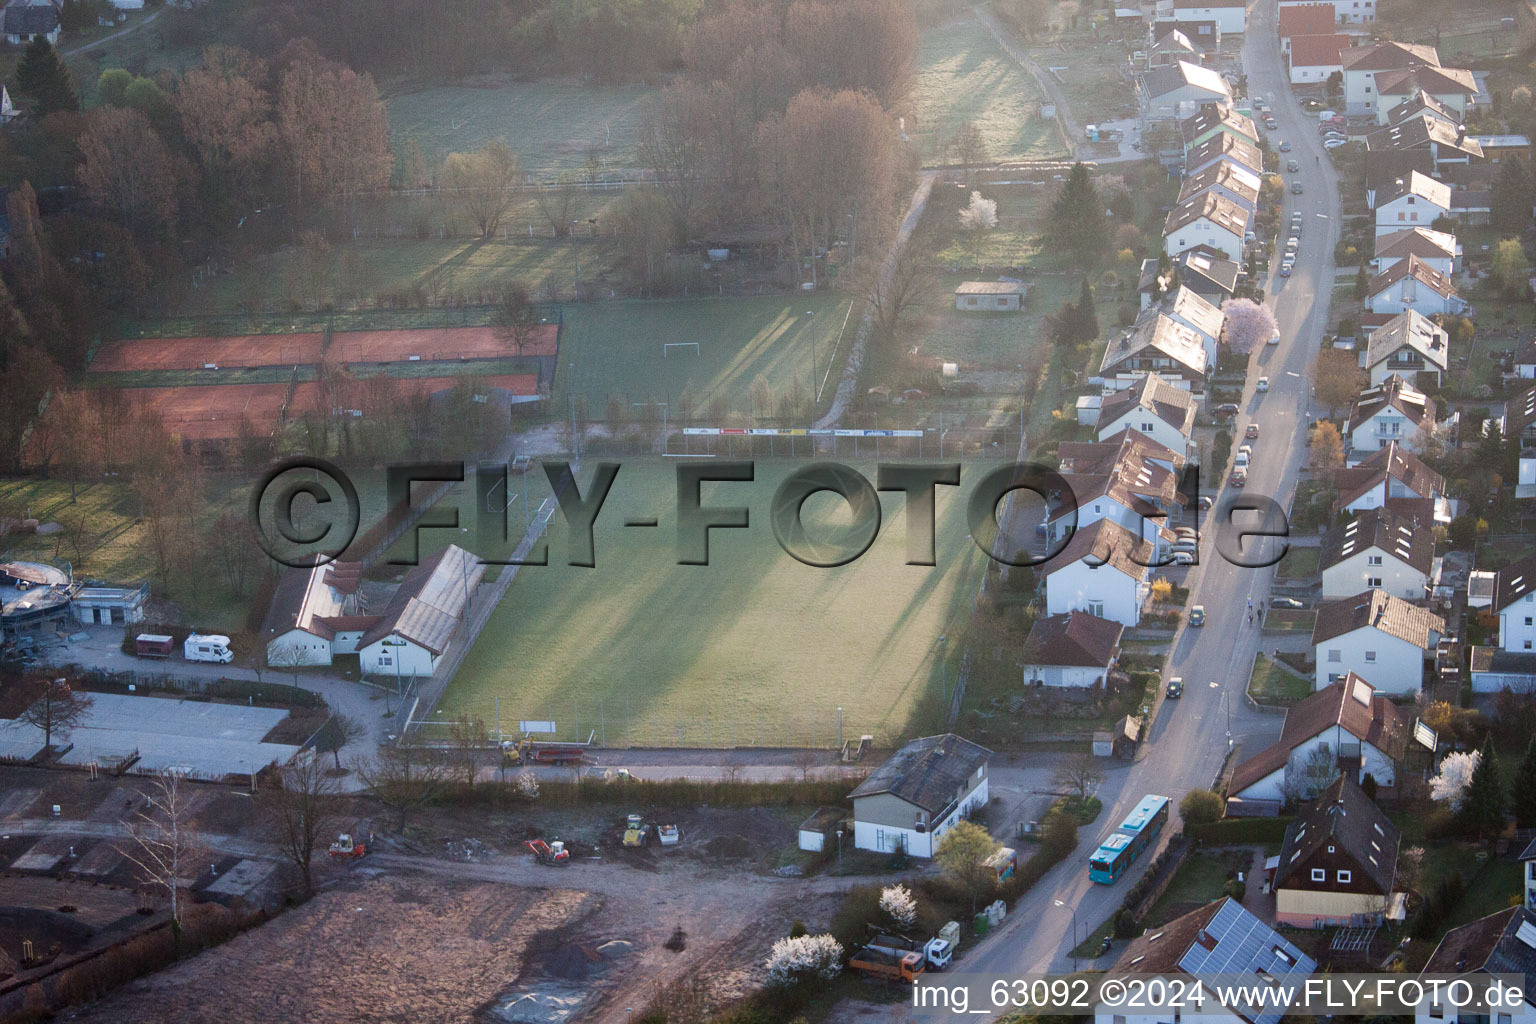 Terrains de sport à le quartier Ingenheim in Billigheim-Ingenheim dans le département Rhénanie-Palatinat, Allemagne du point de vue du drone